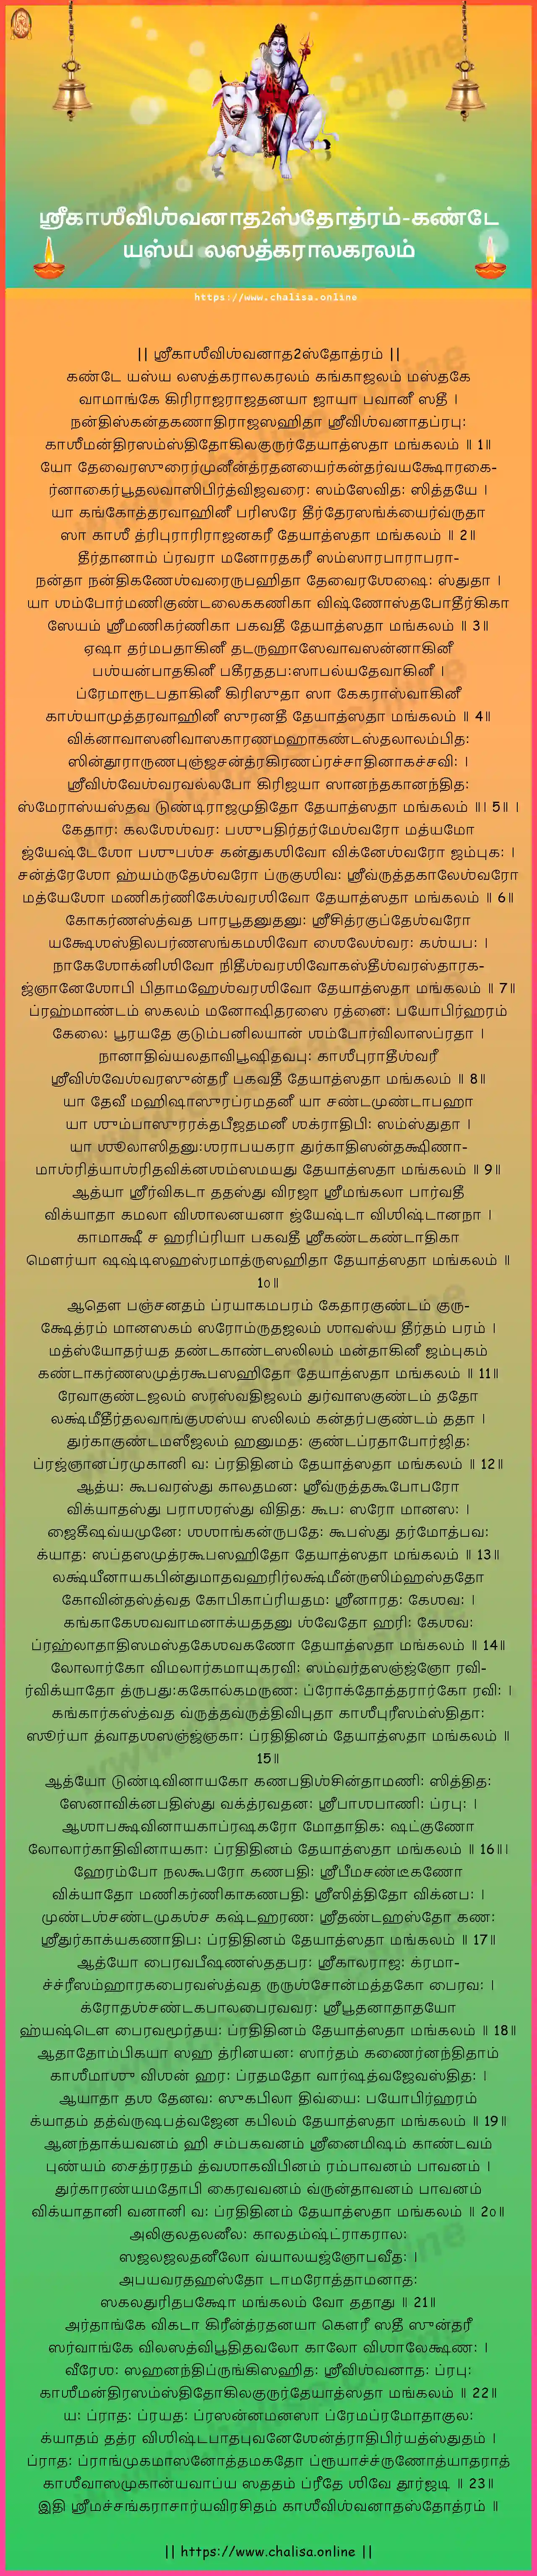 kanthe-yasya-lasatkaralagaralam-sri-kashi-visvanatha-stotram-tamil-tamil-lyrics-download